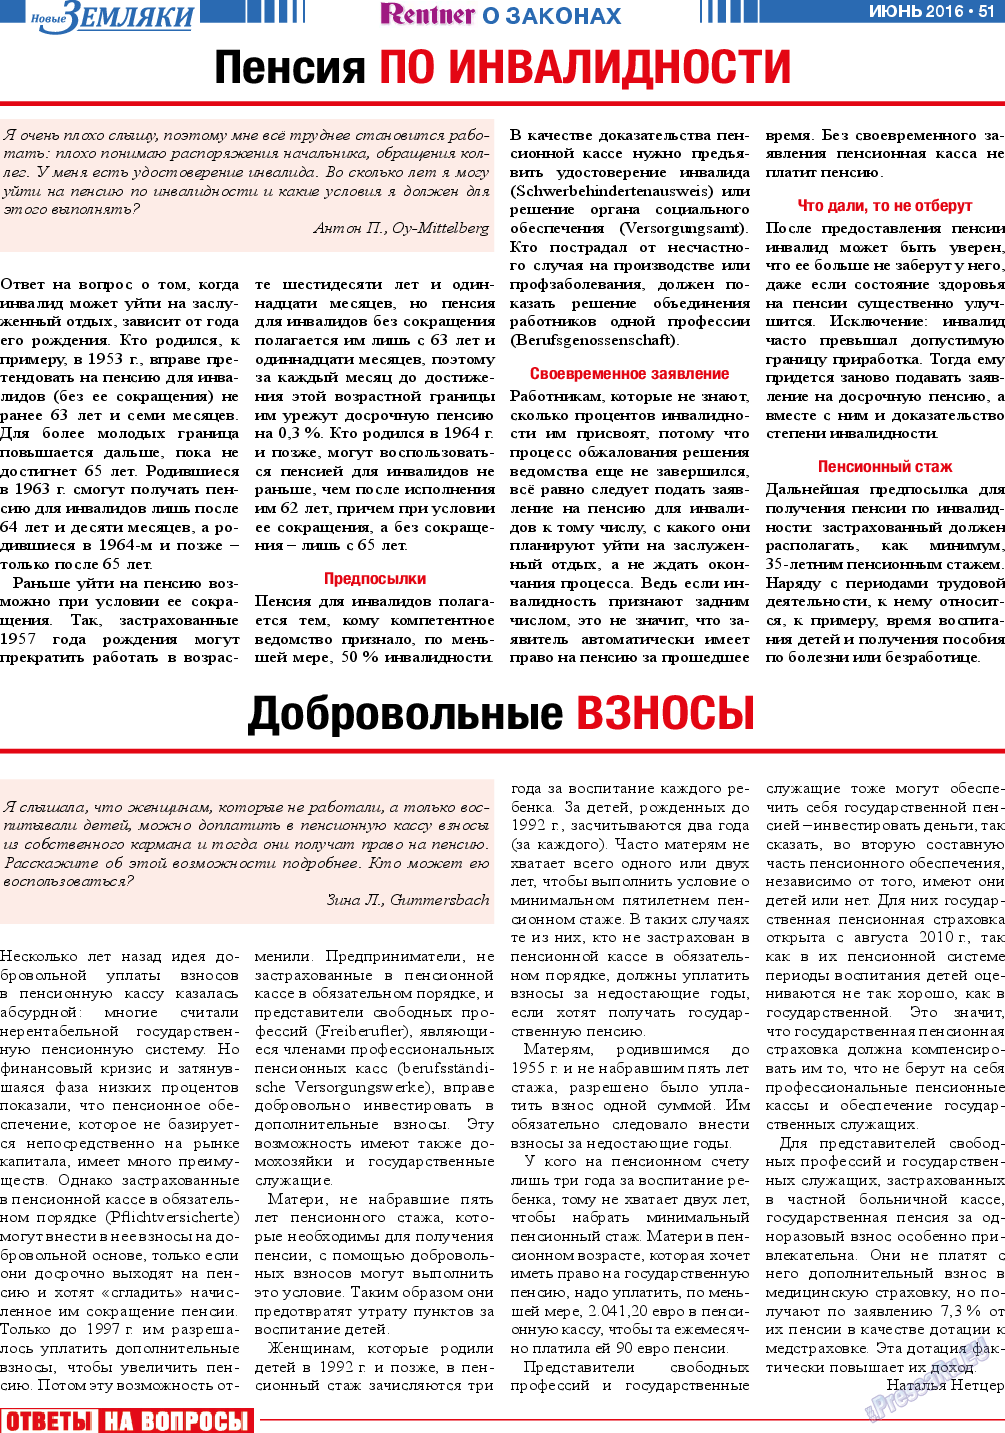 Новые Земляки, газета. 2016 №6 стр.51